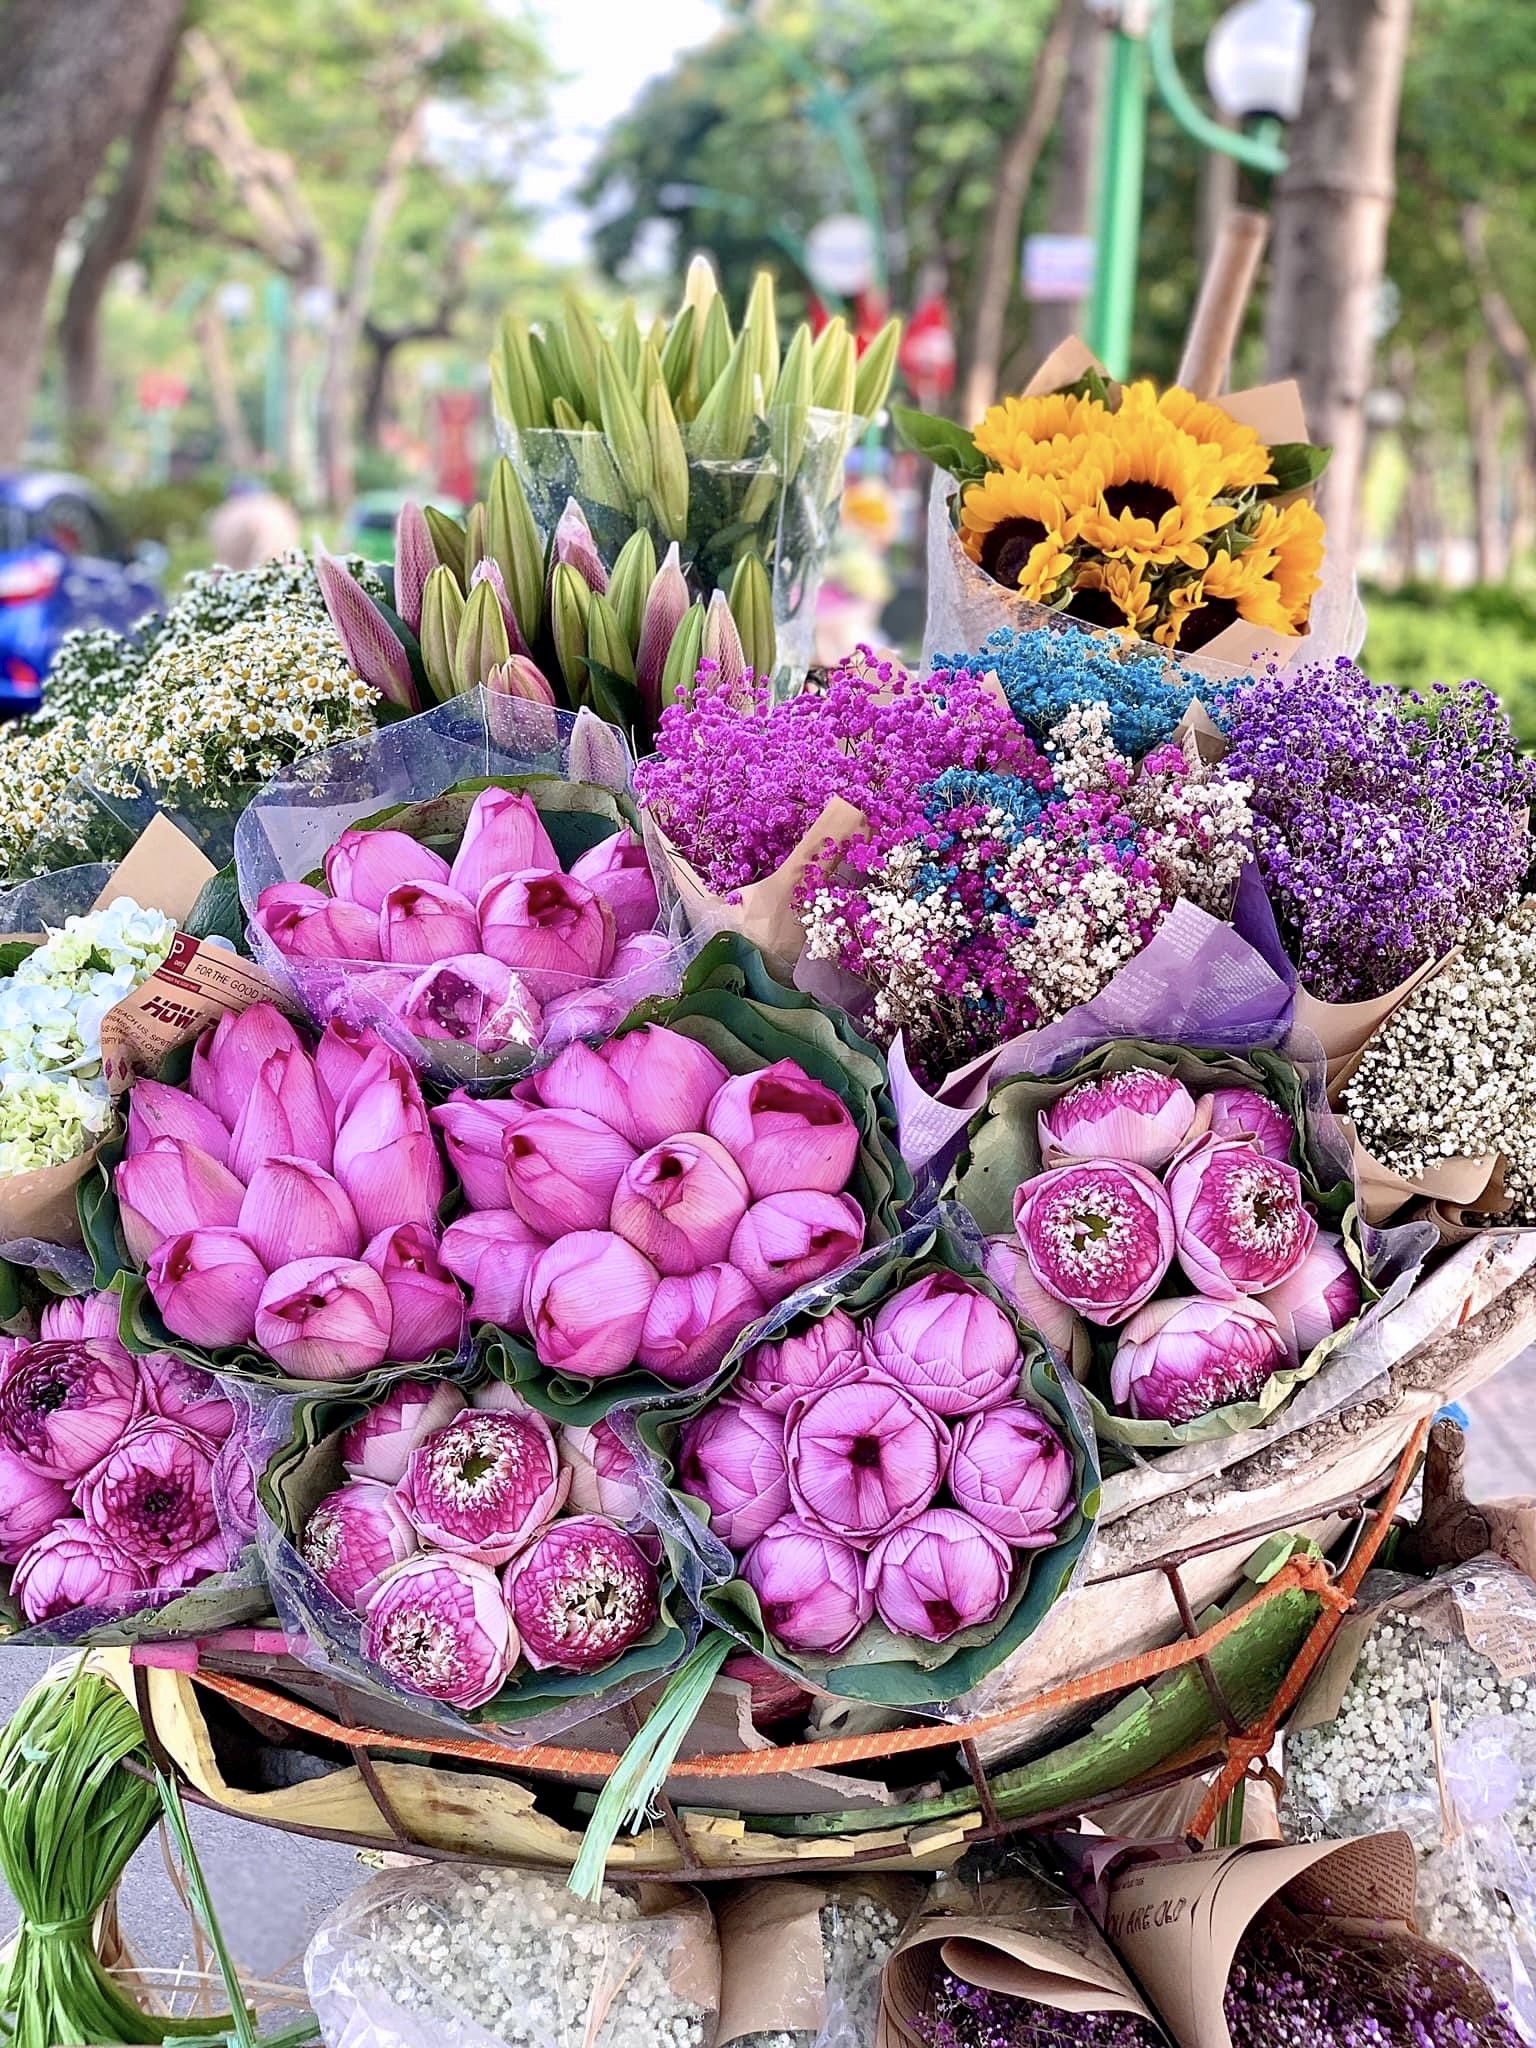 Xe hàng hoa đẹp ngỡ ngàng giữa phố phường Hà Nội - Ảnh 3.